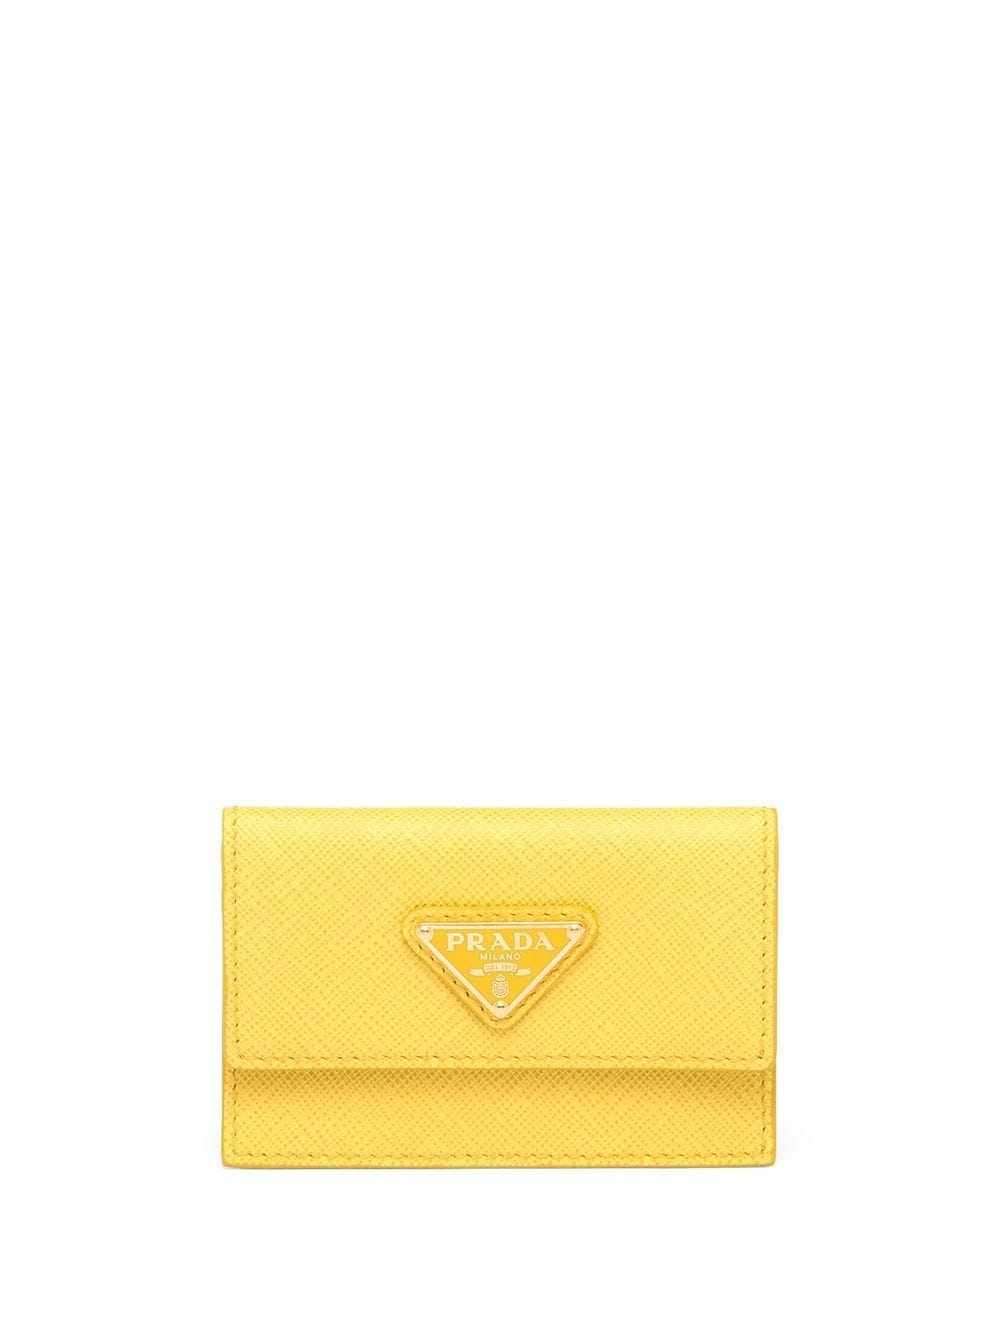 Prada Saffiano Leather Purse In Yellow